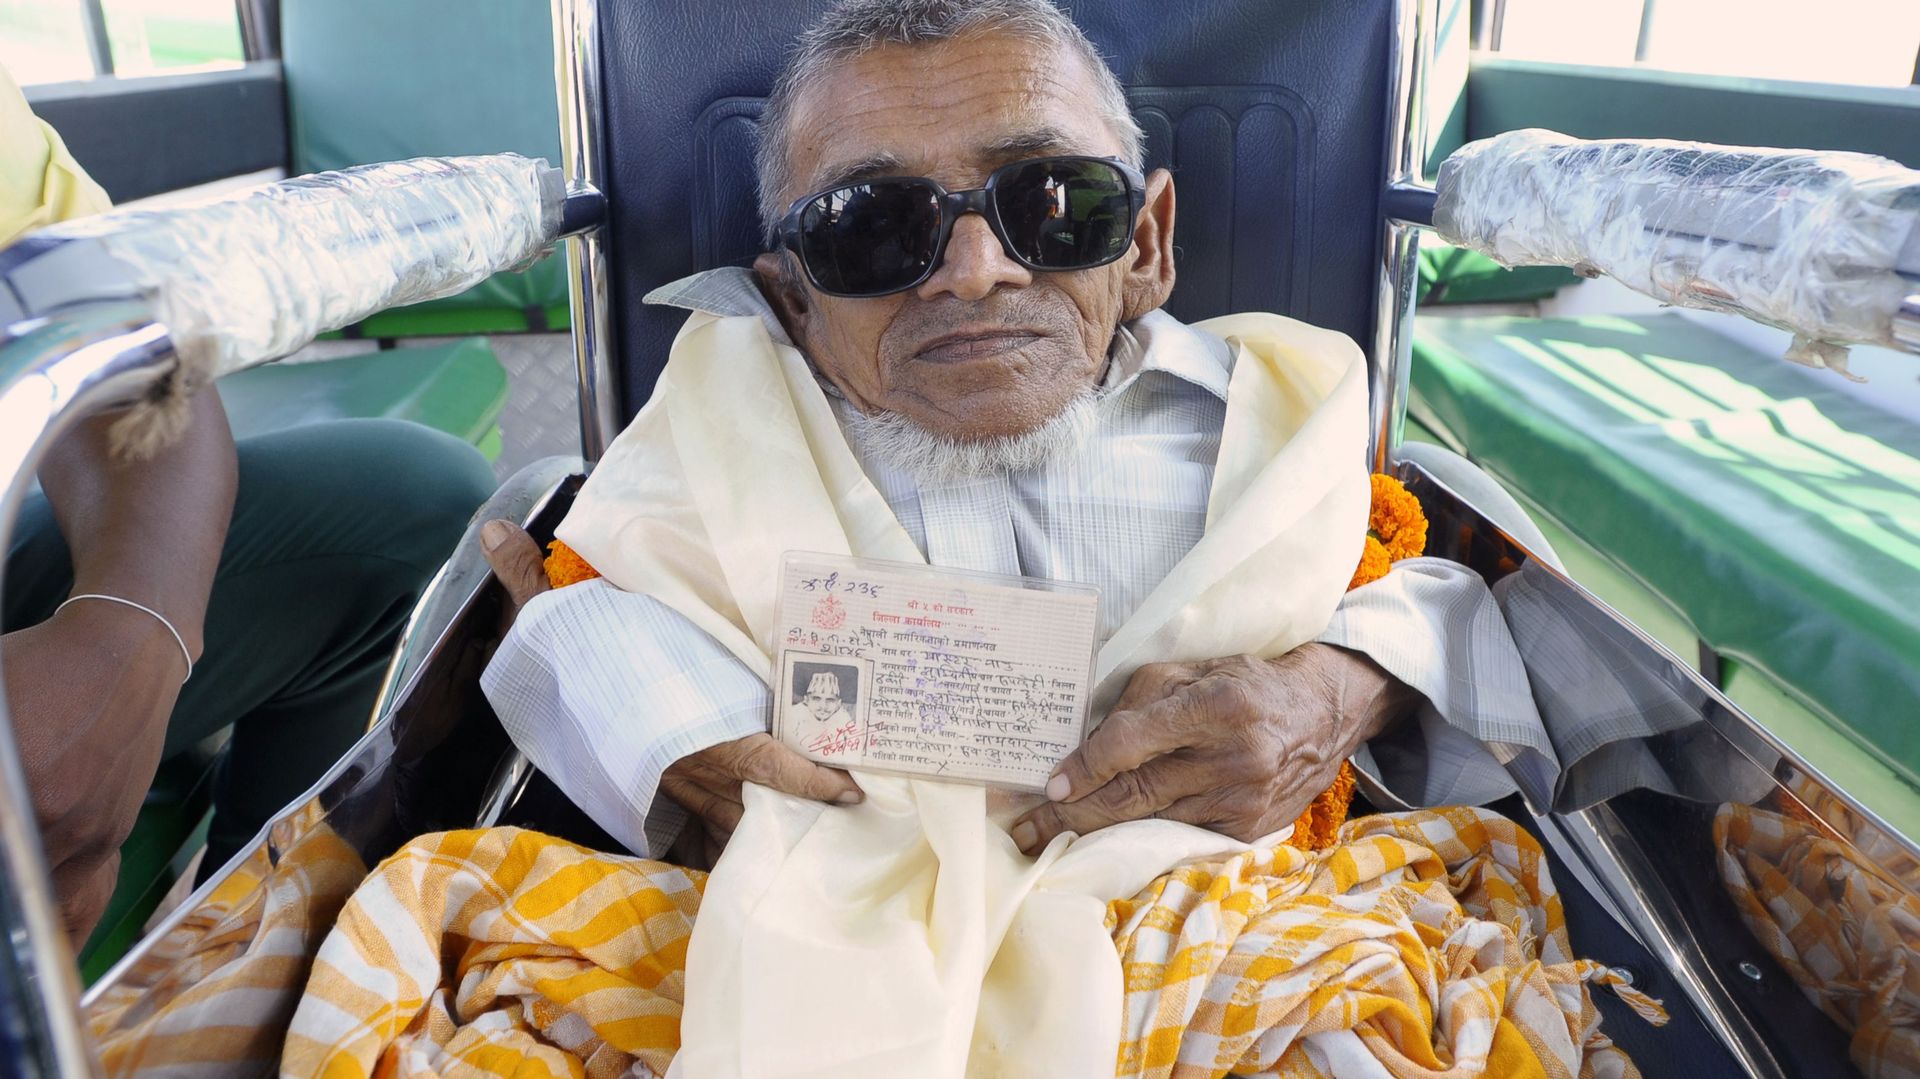 Un Népalais de 41 cm réclame le titre de plus petite personne invalide du monde